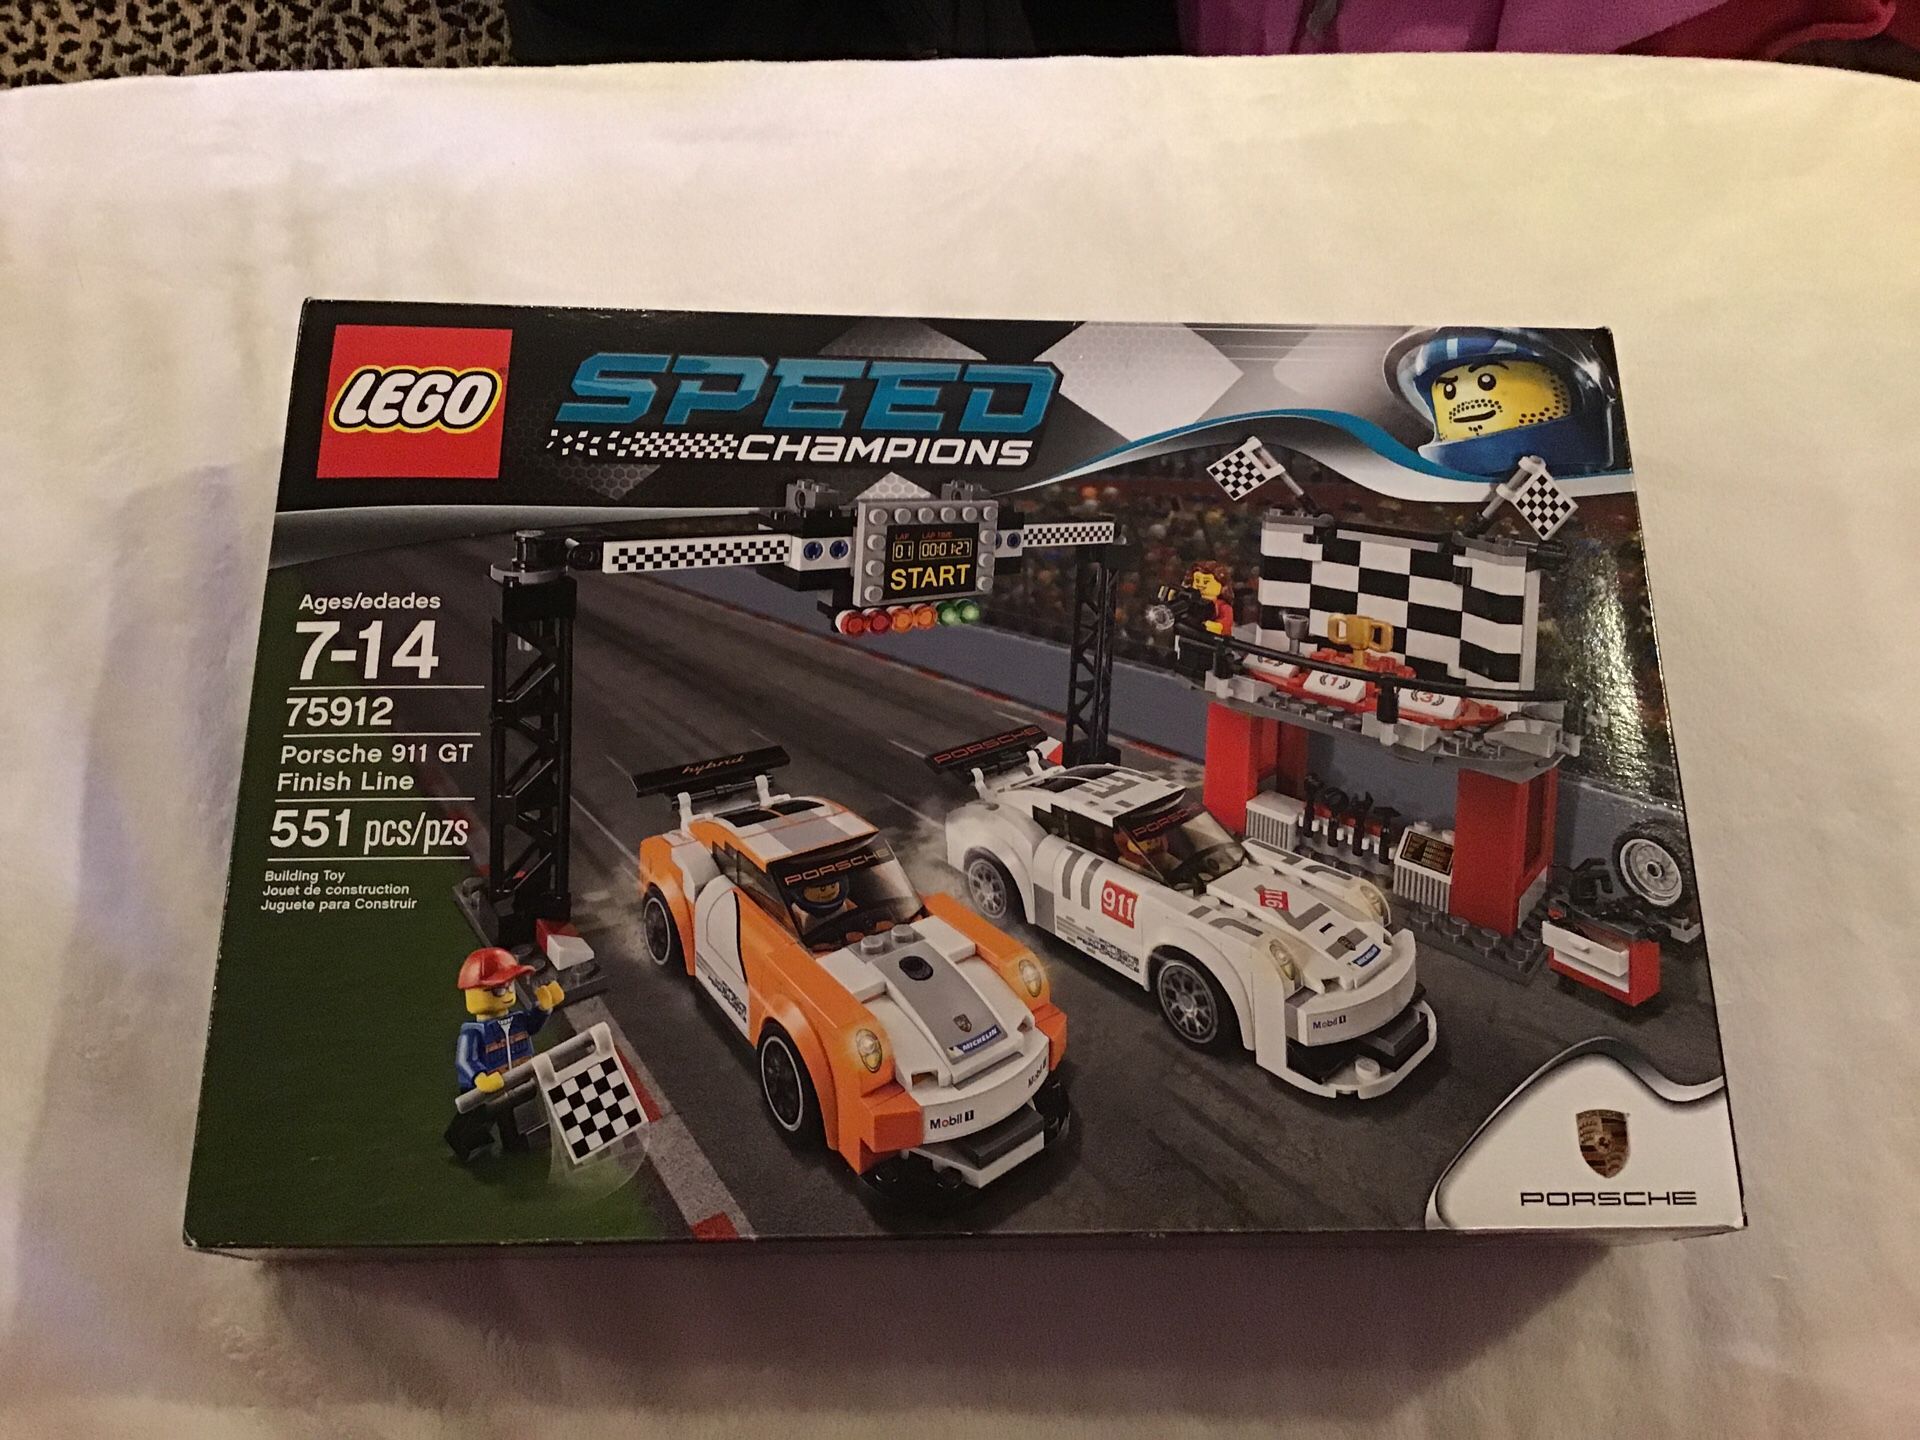 Lego Speed champions Porsche 911 GT finish line